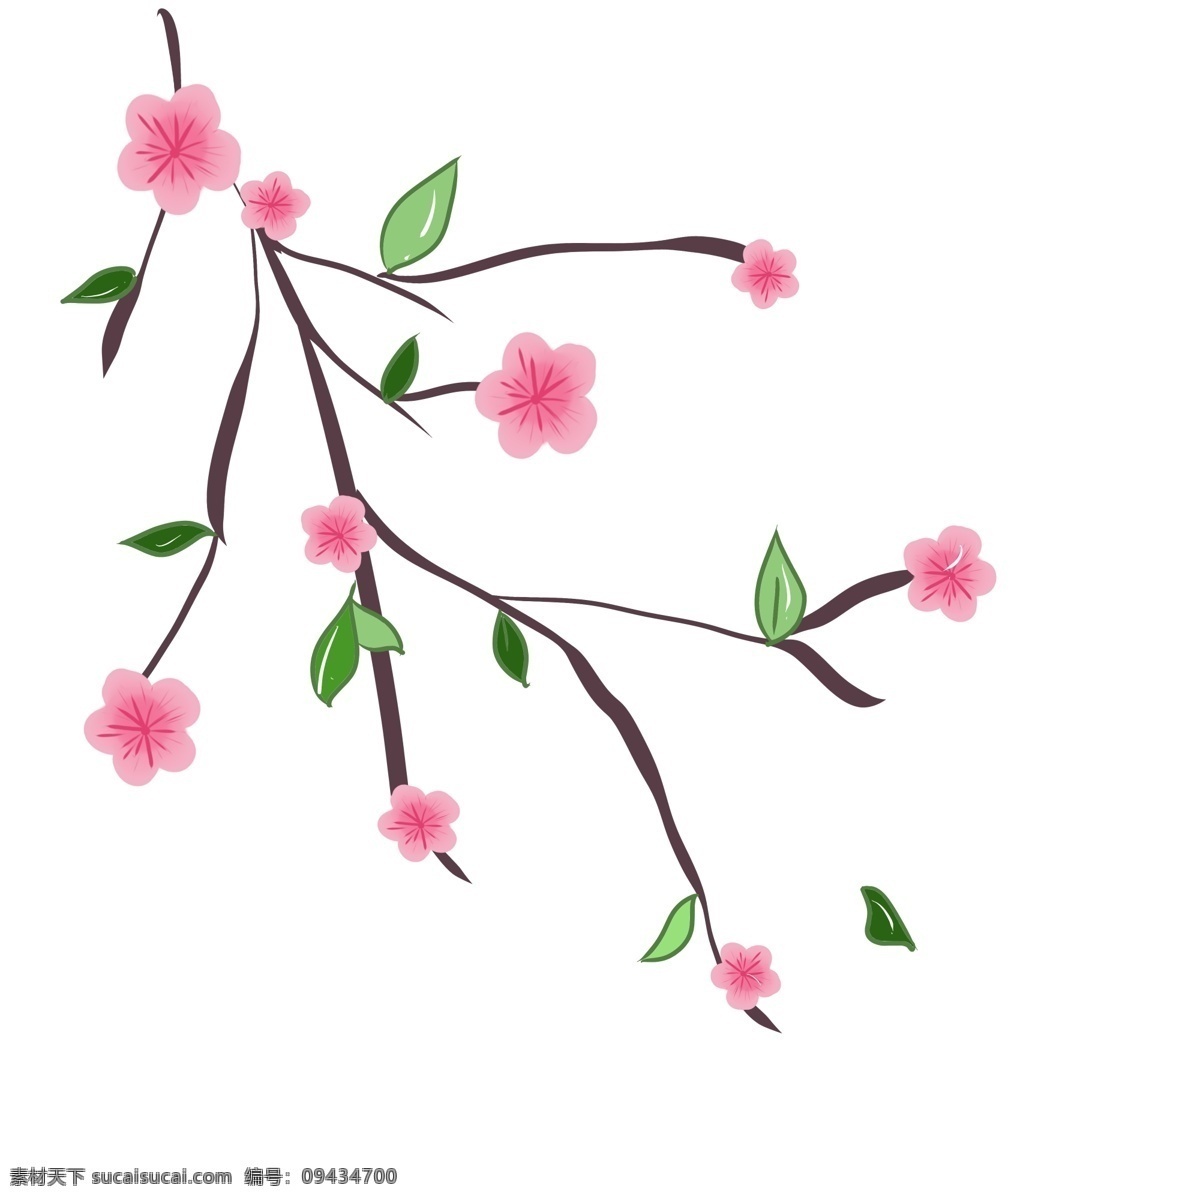 盛开 樱花 花儿 插画 樱花枝 粉色樱花 花朵 盛开的樱花 唯美樱花枝 漂亮的樱花 花儿插图